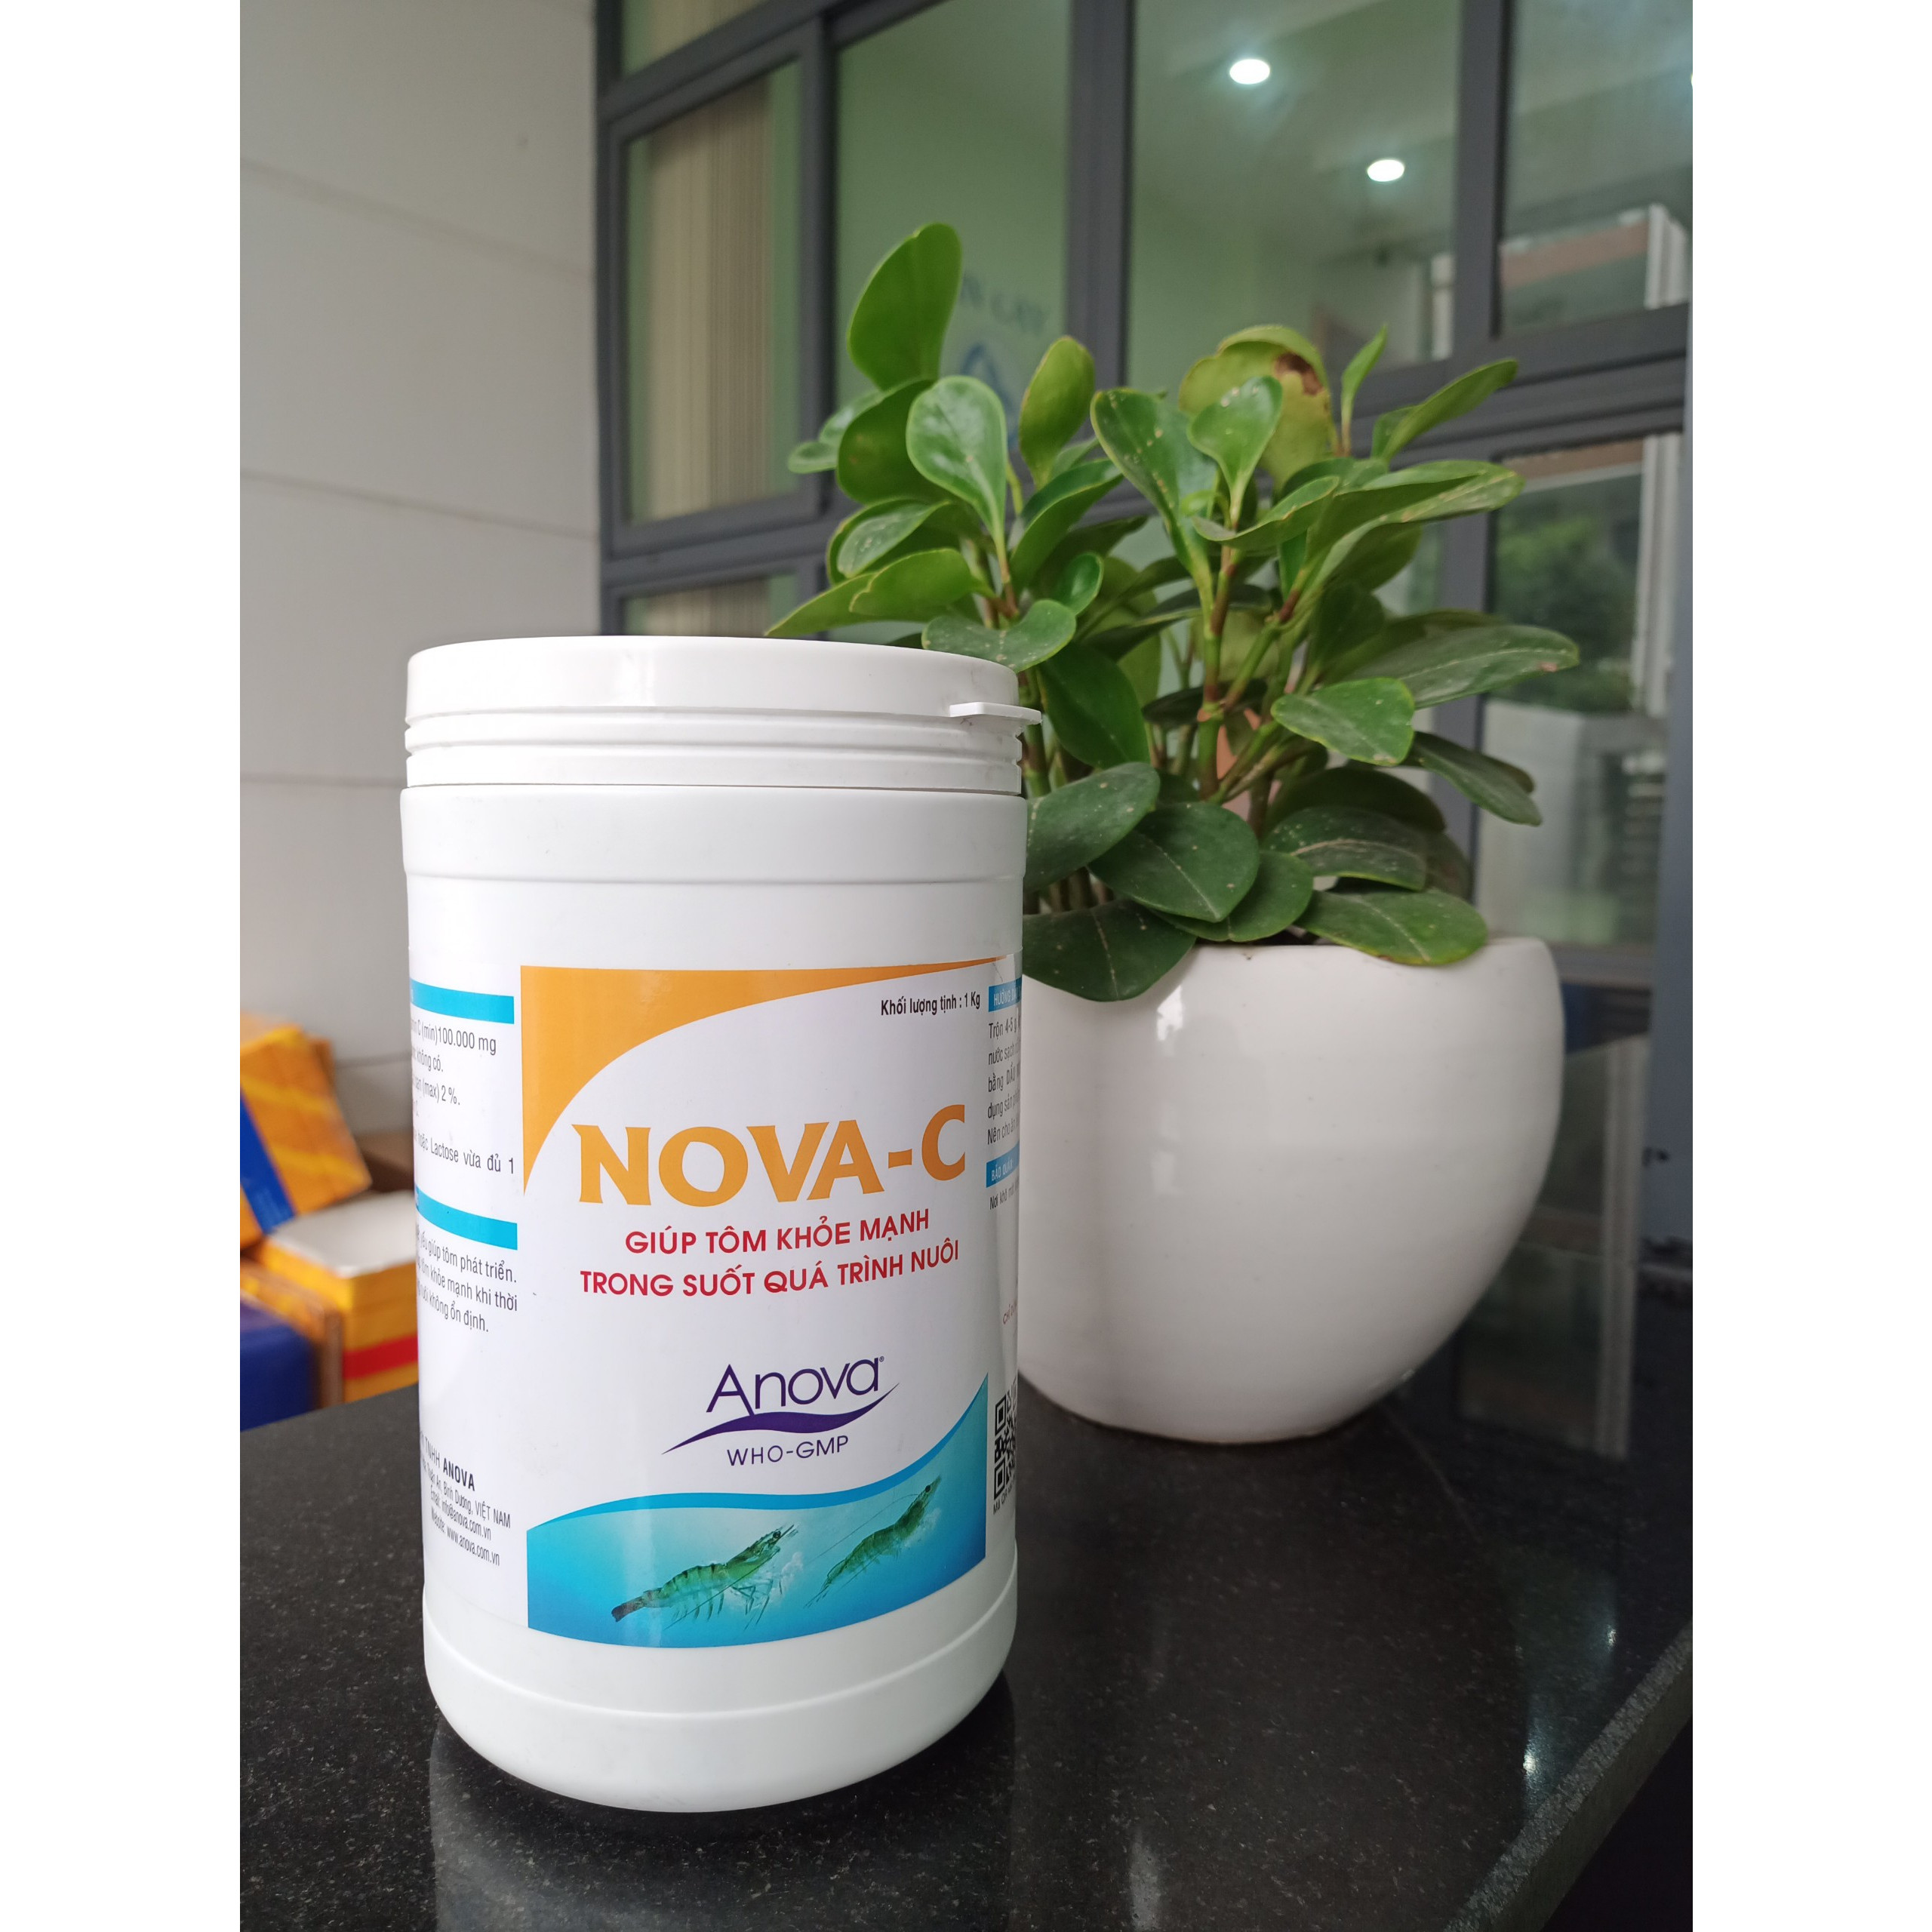 Nova C cho tôm (Anova Nova C) bổ sung khoáng giúp tôm khỏe mạnh, tăng sức đề kháng